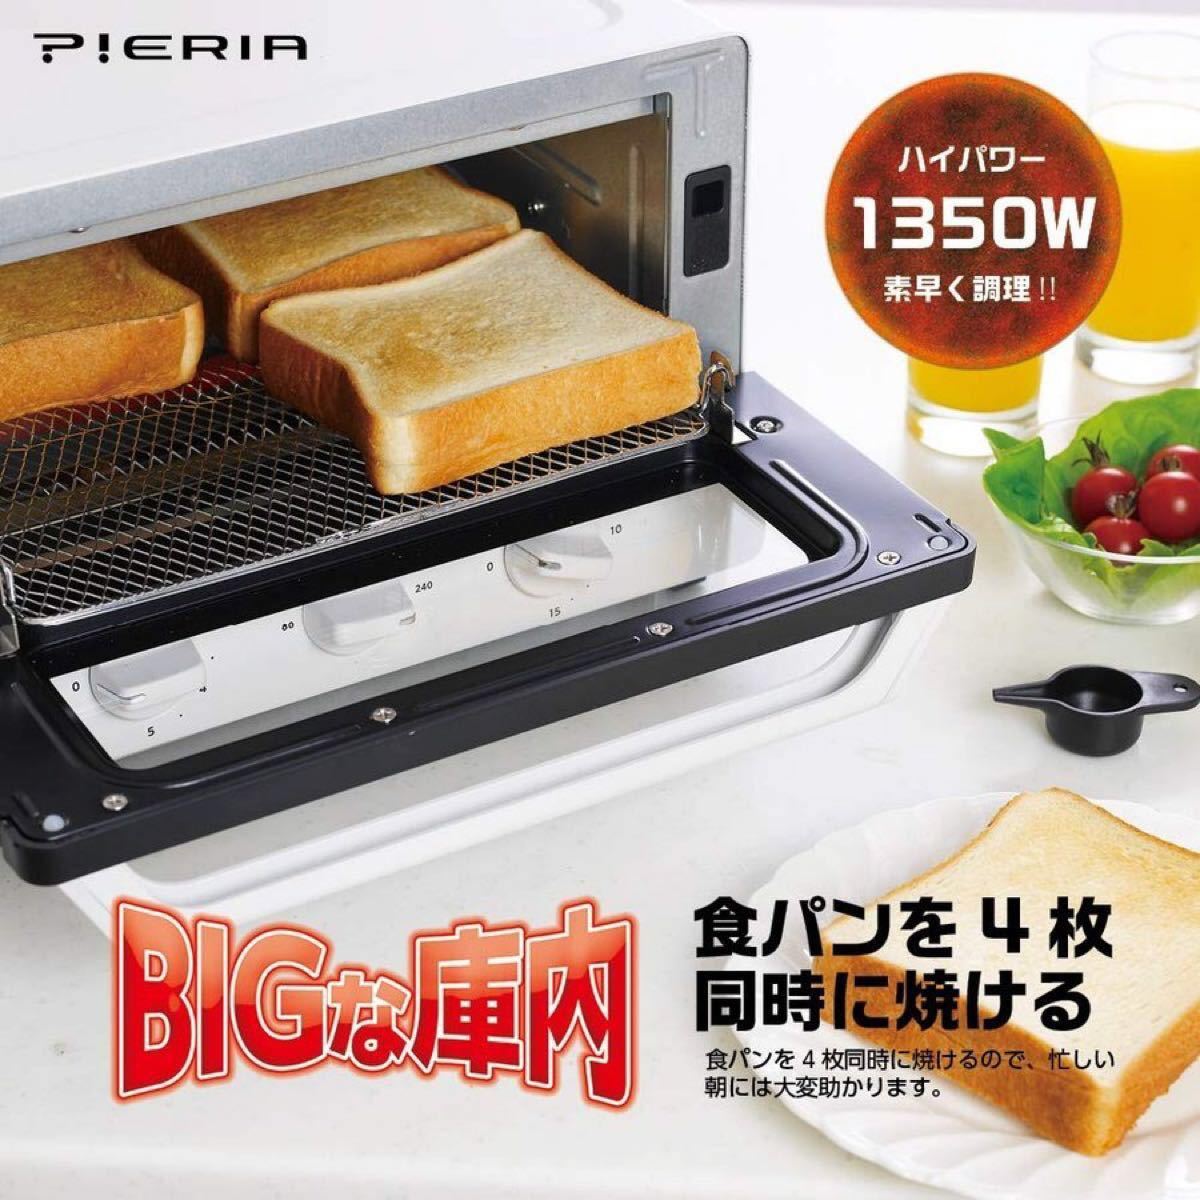 ドウシシャ スチーム BIG オーブン トースター OTS-132（WH）【新品・未開封】